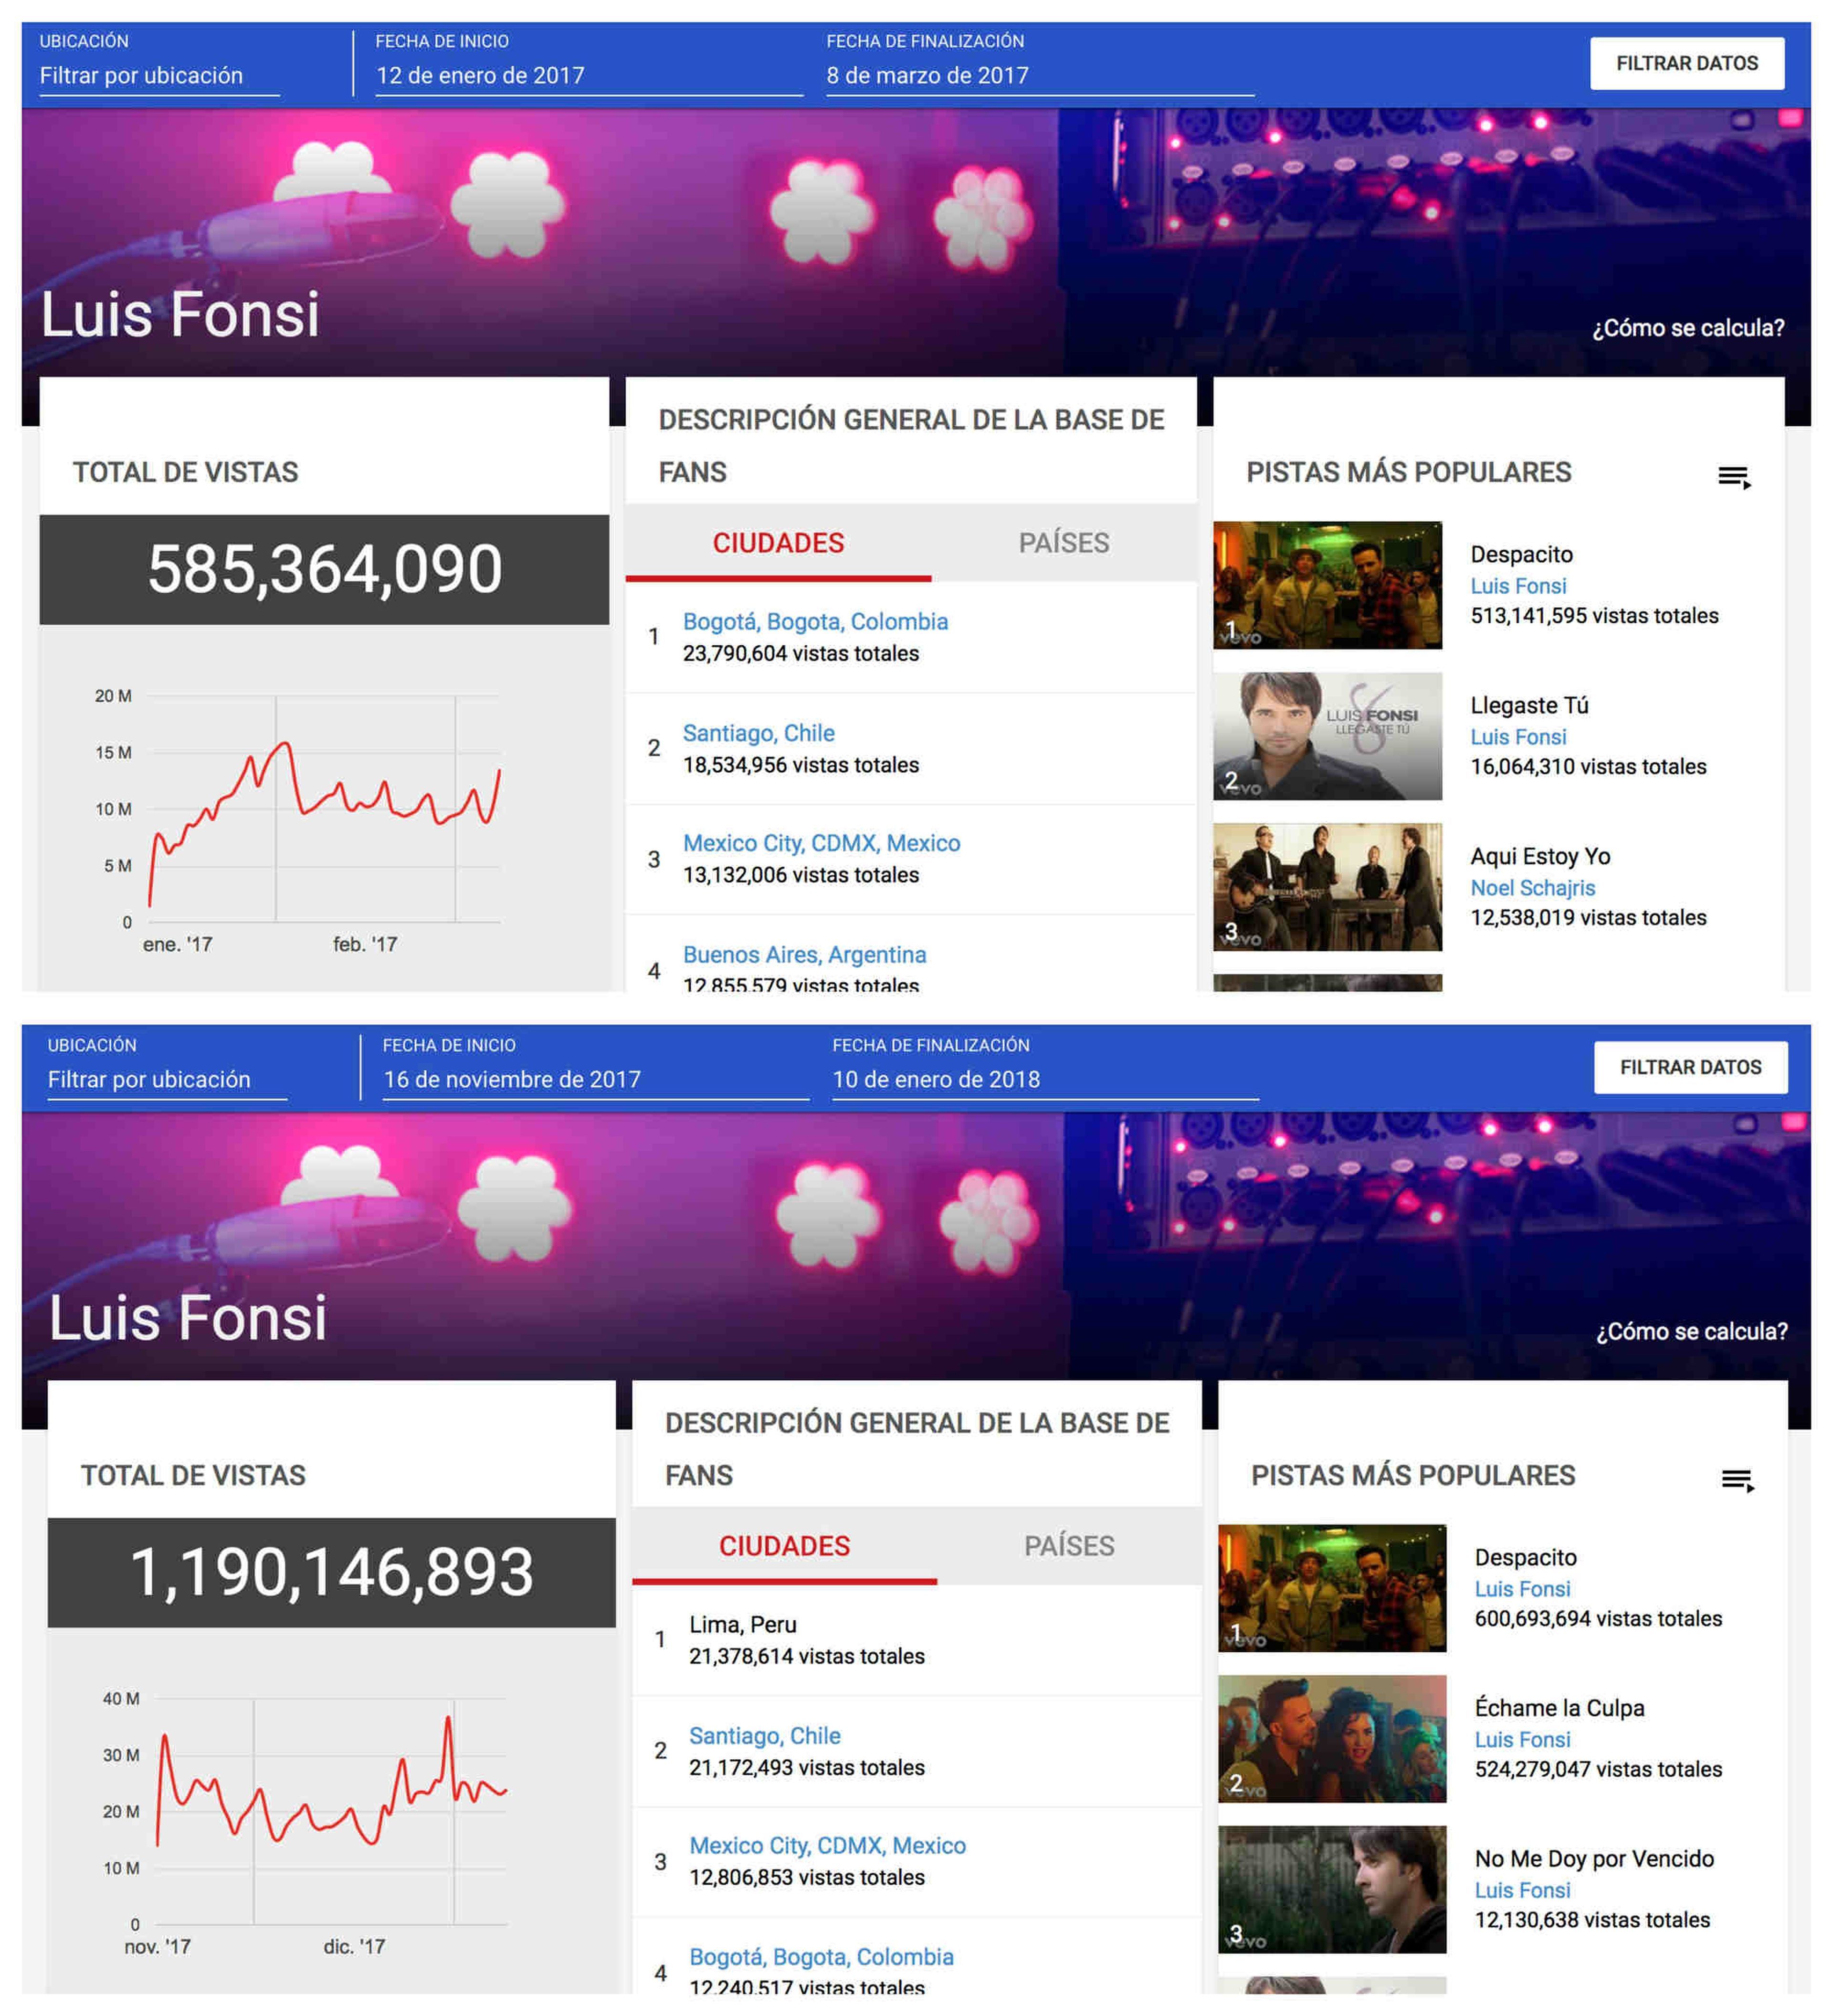 Estadísticas de 'Despacito' en sus primeros 56 días y de 'Échame la culpa' en YouTube.